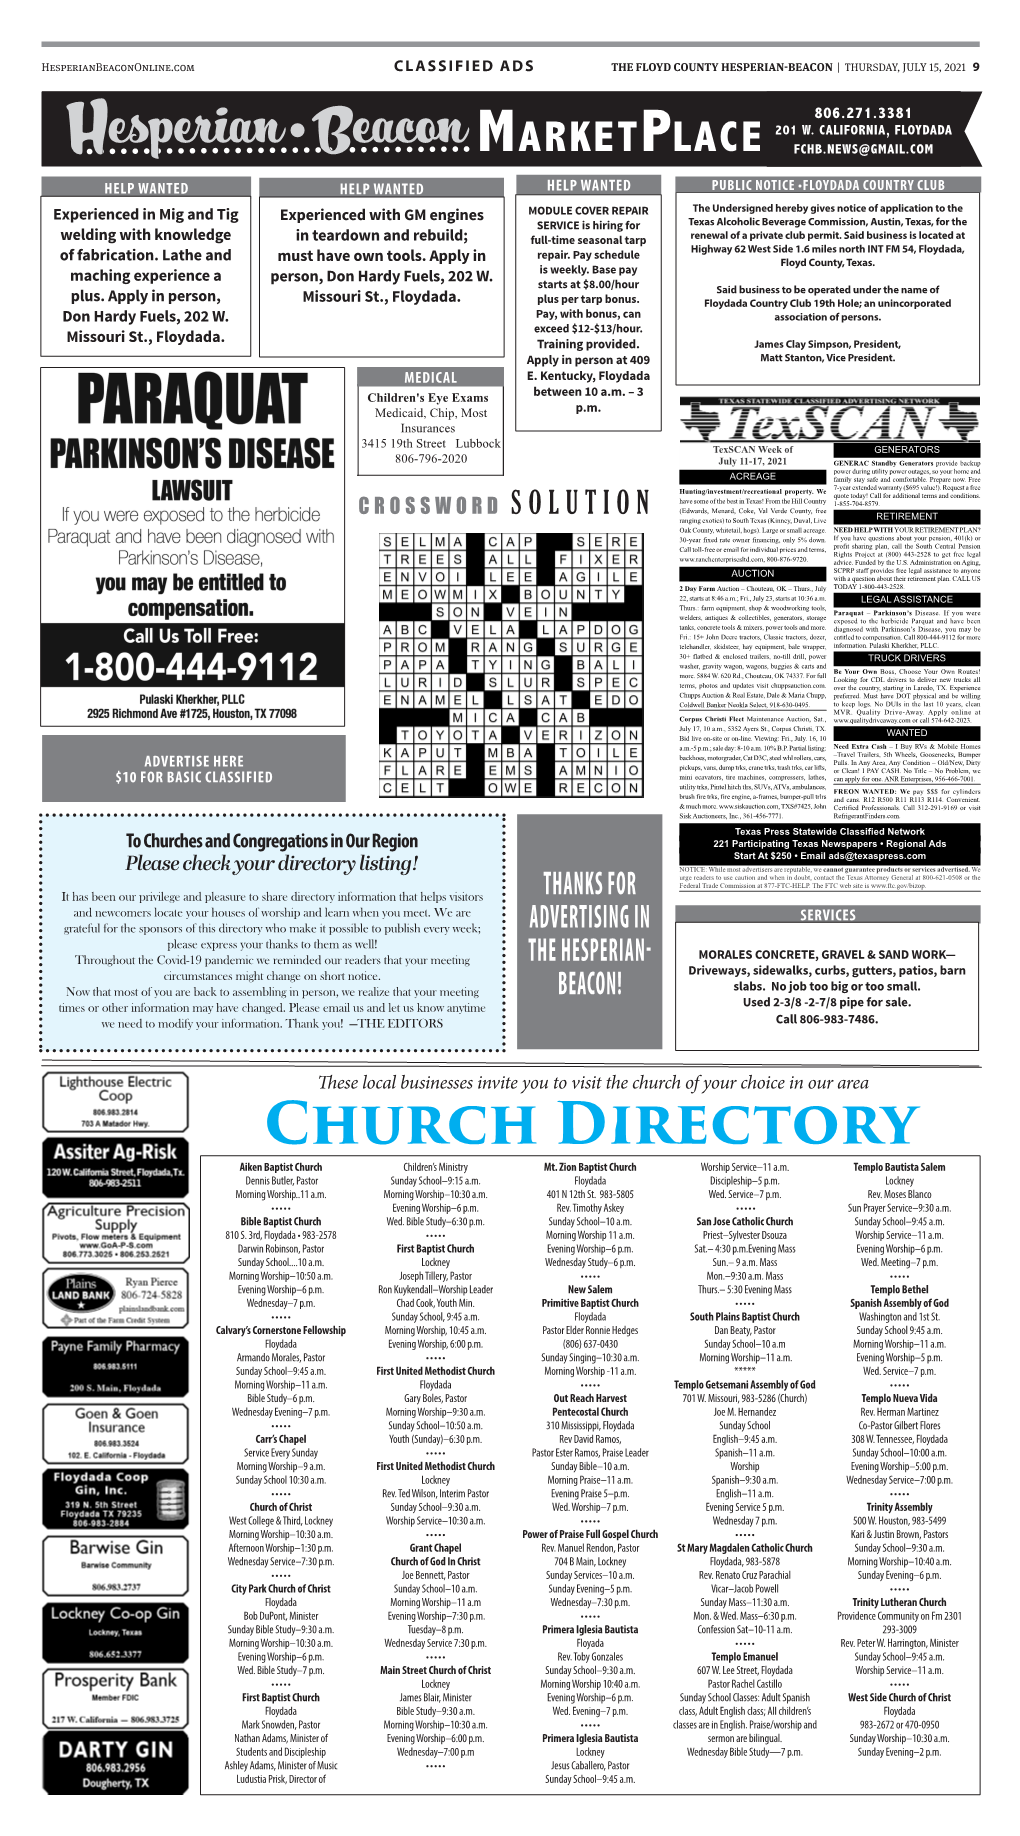 Church Directory Aiken Baptist Church Children’S Ministry Mt